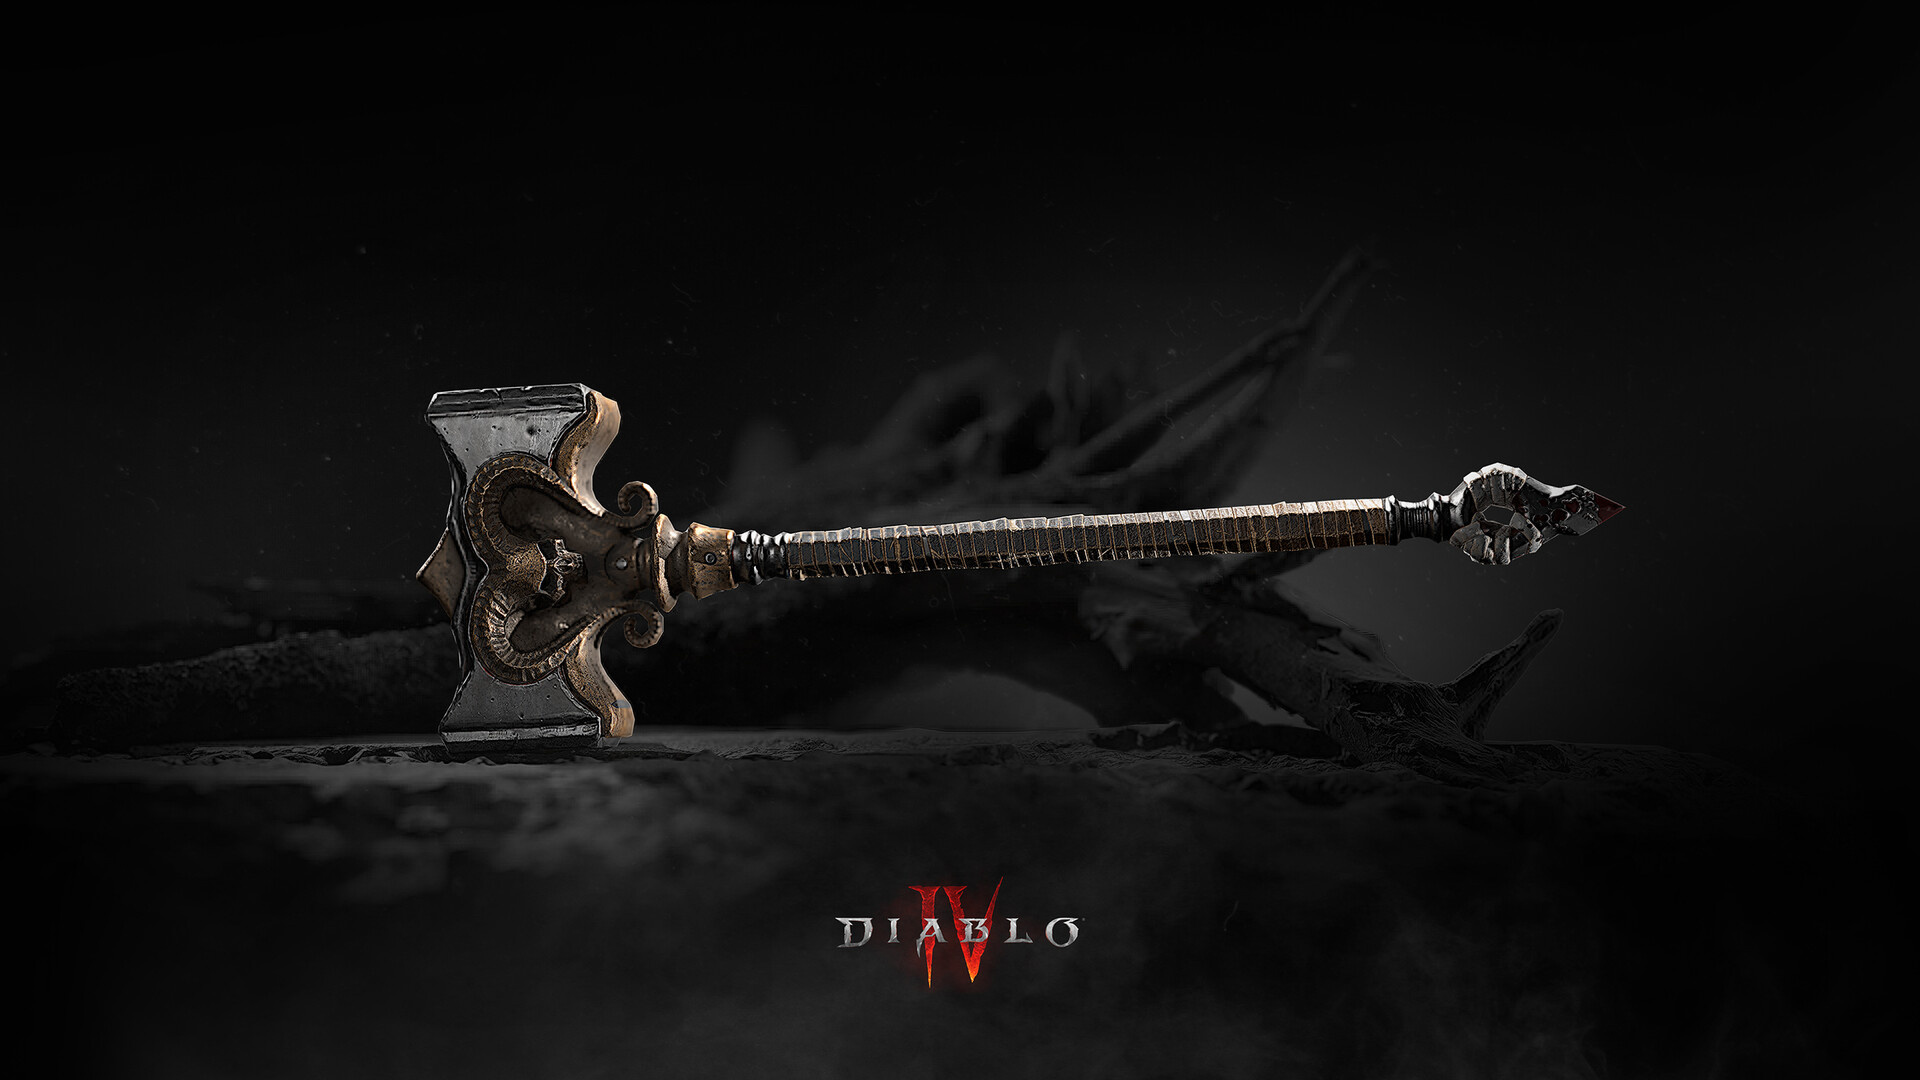 Diablo IV, Breathtaking barbarian art, Powerful hammer design, Fan tribute, 1920x1080 Full HD Desktop